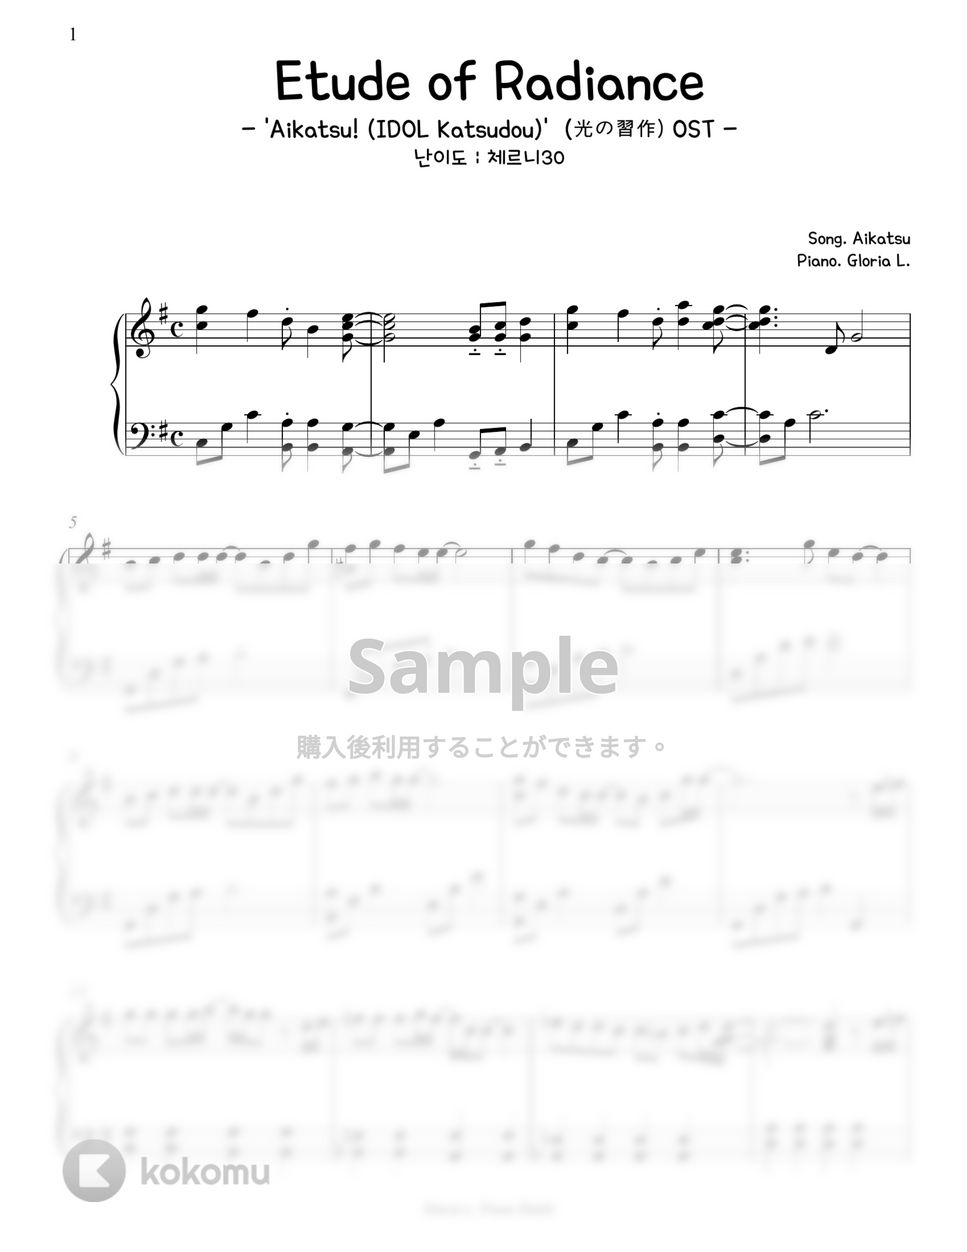 アイカツ - Etude of Radiance ('Aikatsu! -IDOL Katsudou-' OST 光の習作)  (難易度:チェルニー30) 楽譜 by Gloria L.